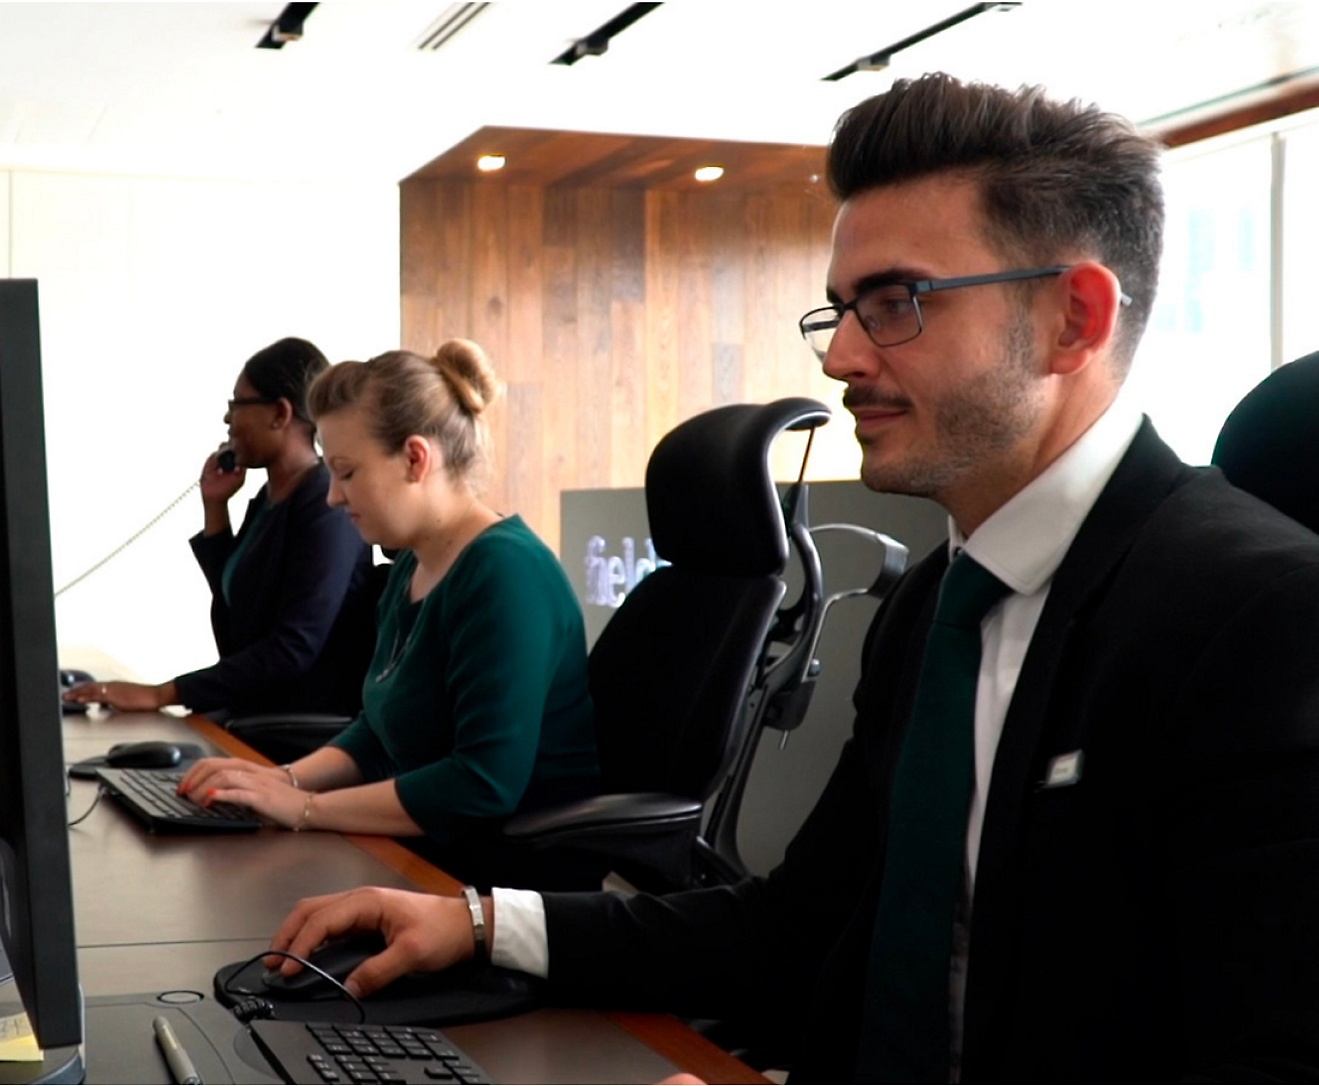 Groupe de personnes travaillant sur des ordinateurs dans un bureau.